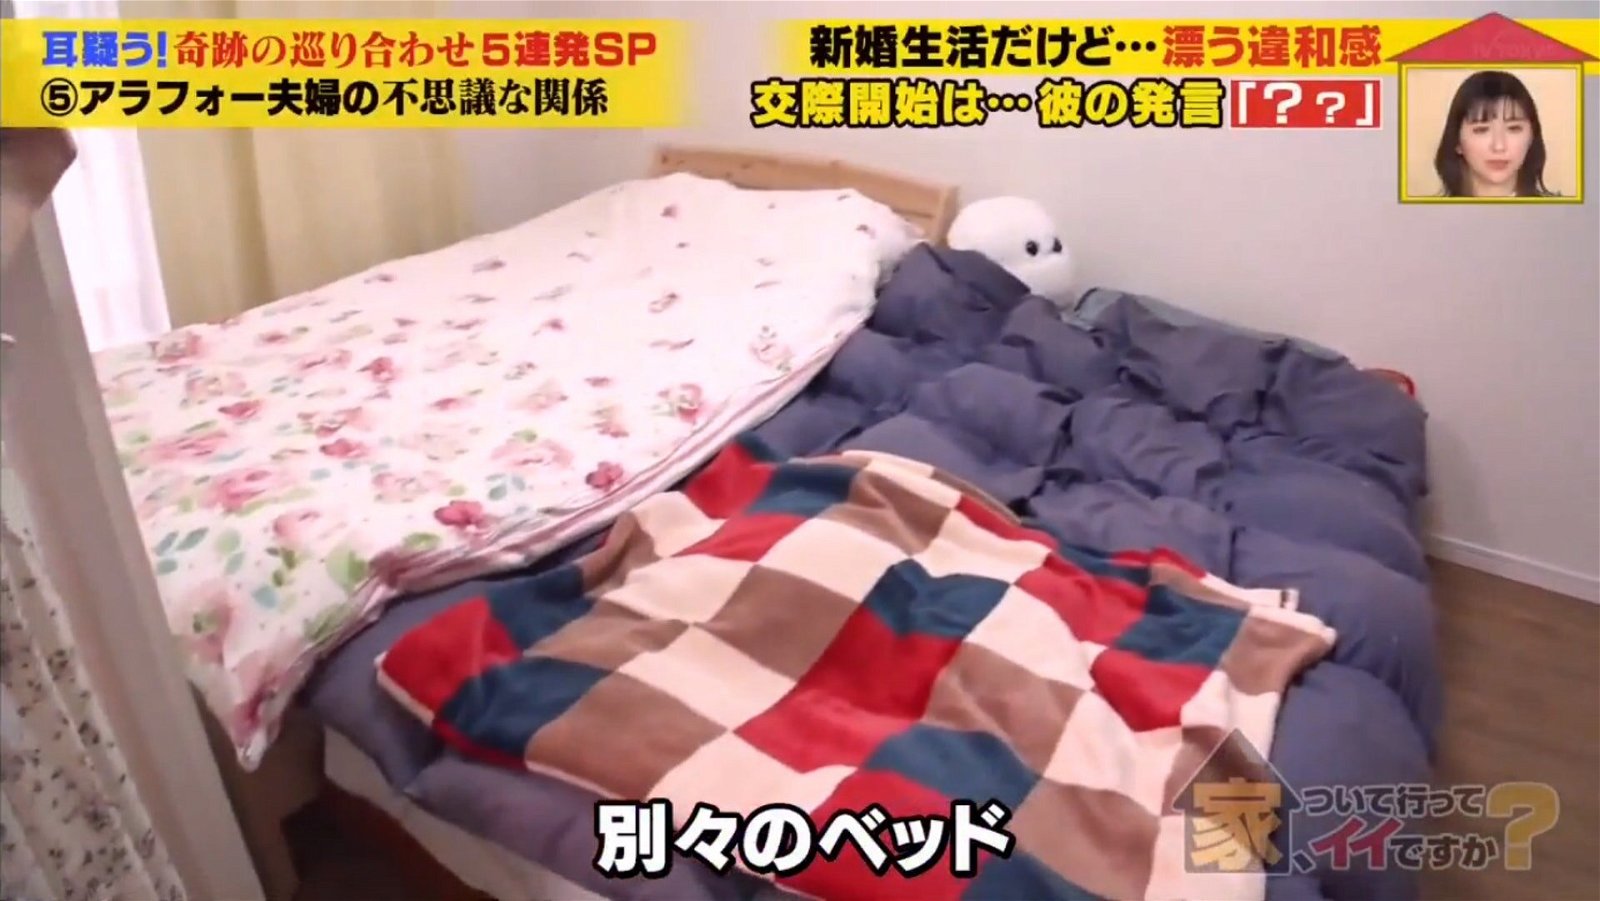 尽管两人同房而眠，却是各自一张风格迥异的单人床。